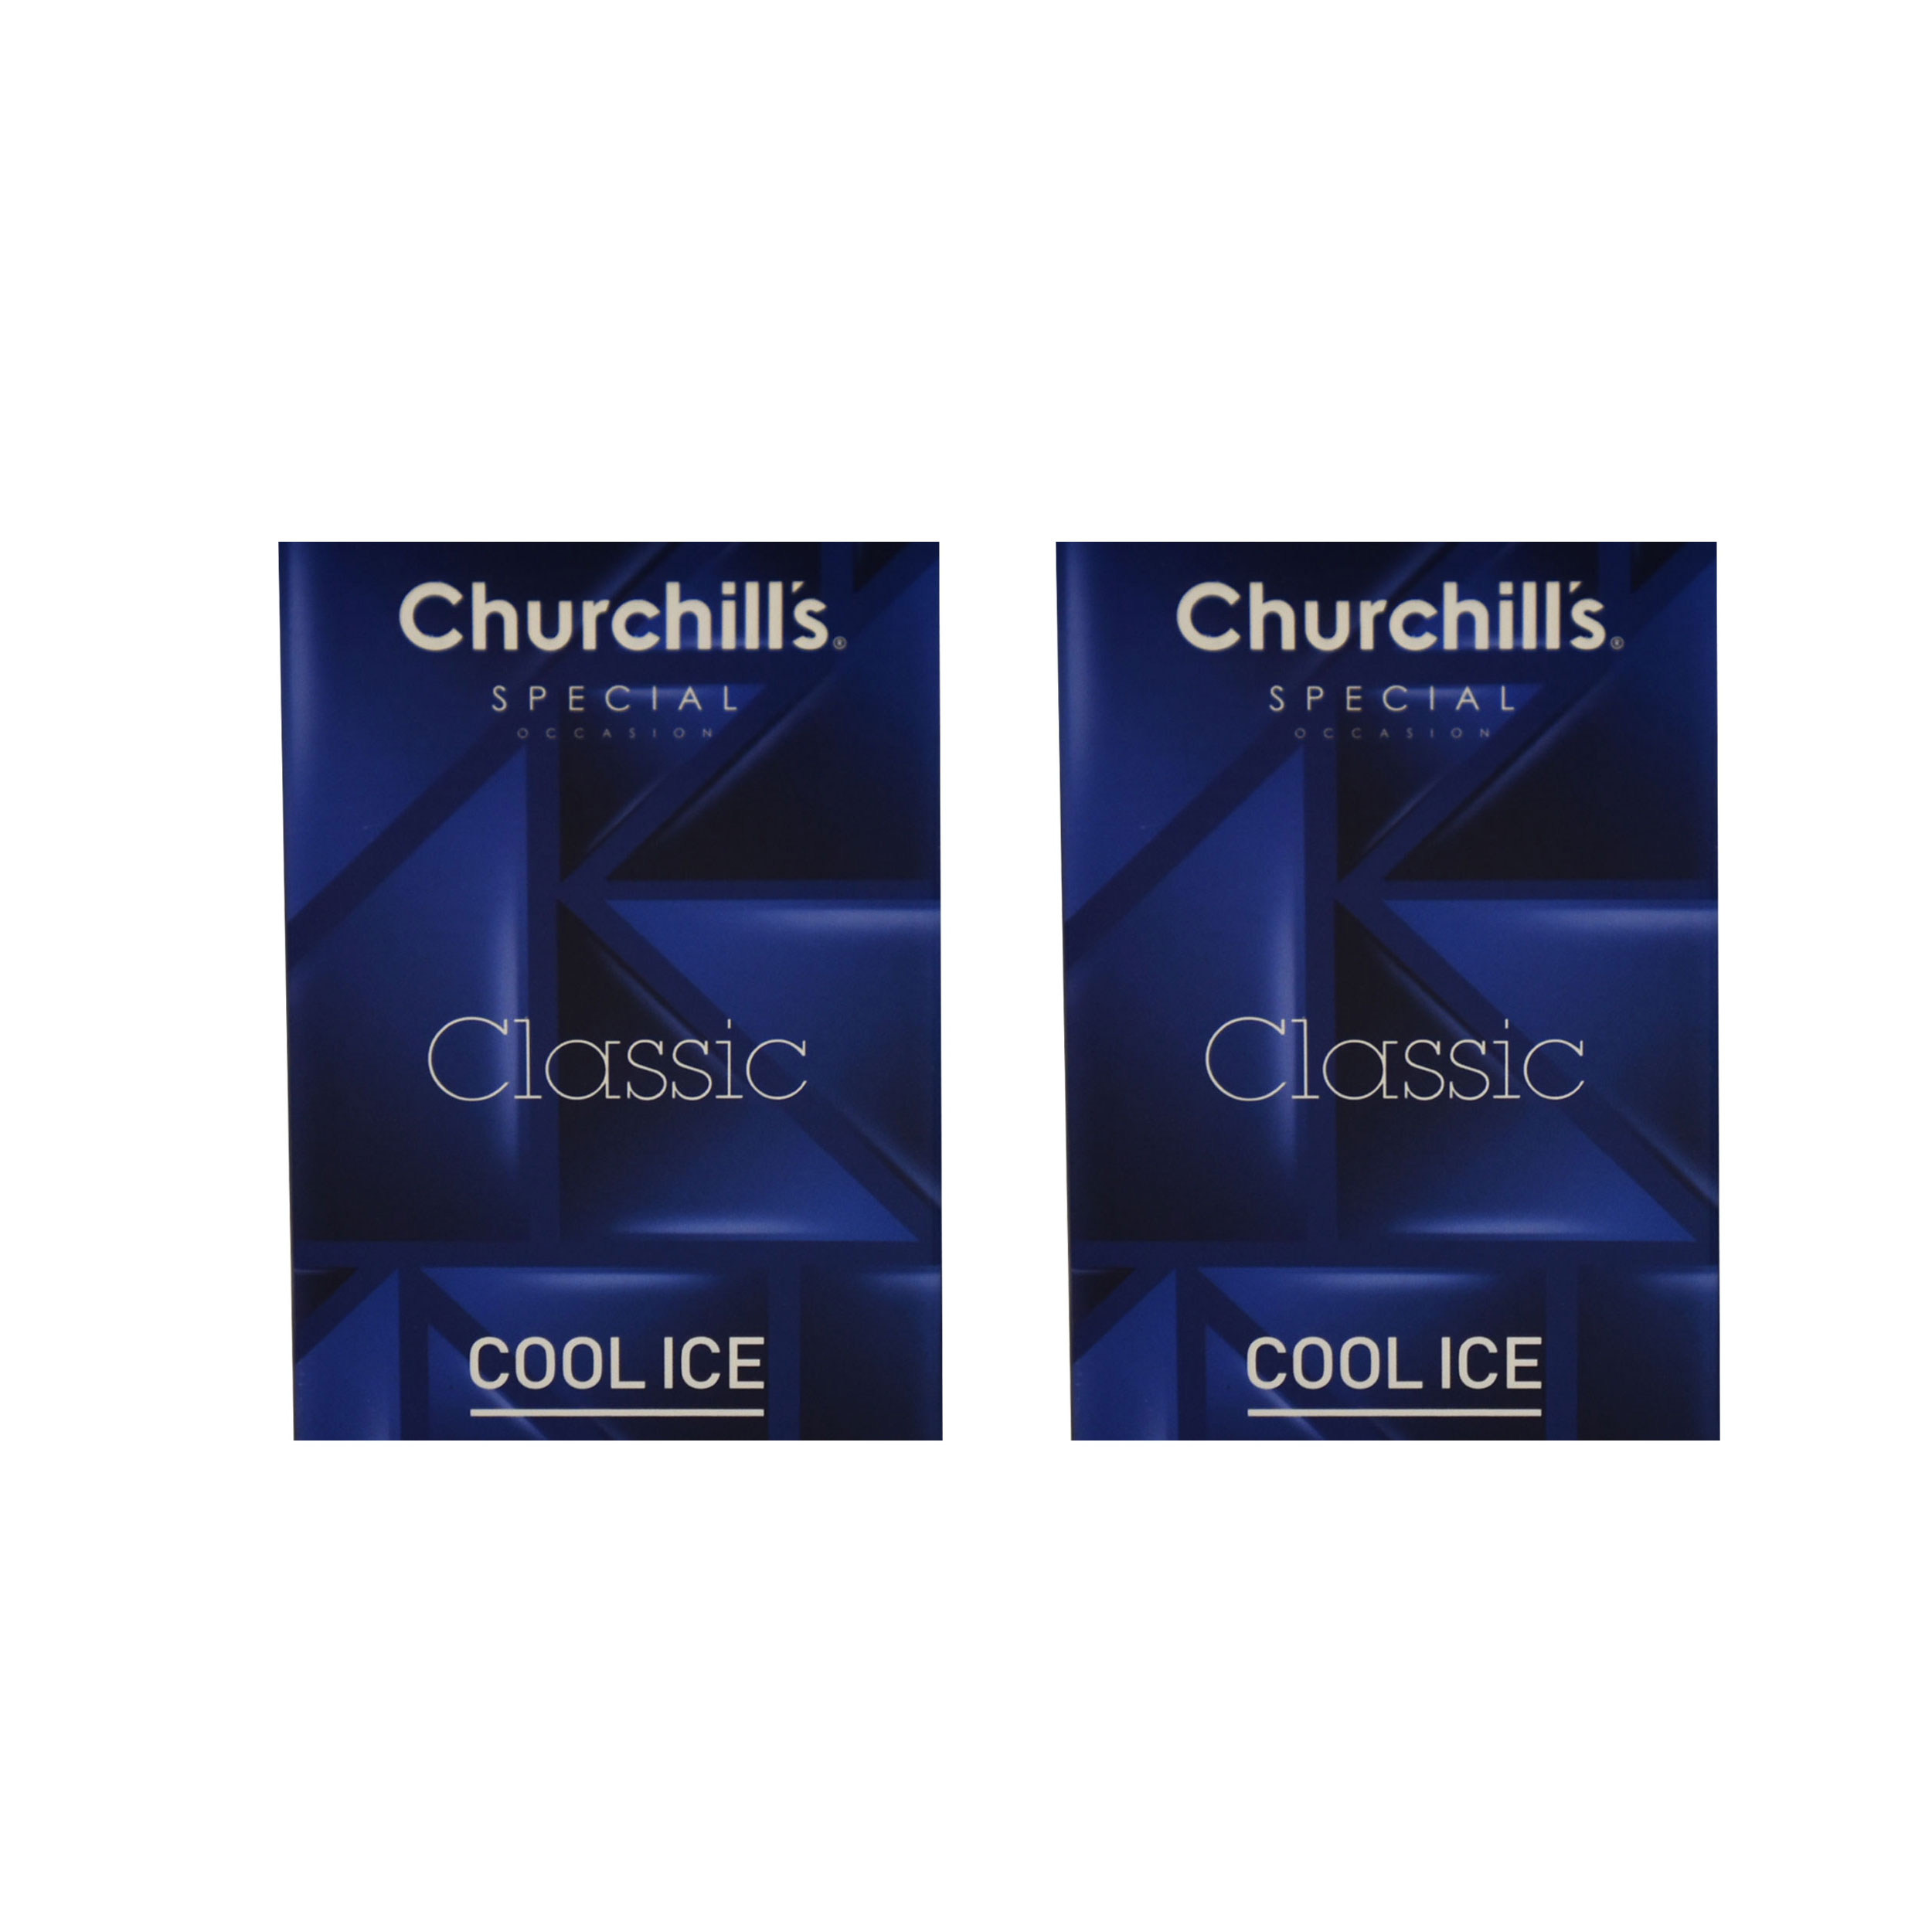 کاندوم چرچیلز مدل Classic Cool Ice مجموعه 2 عددی